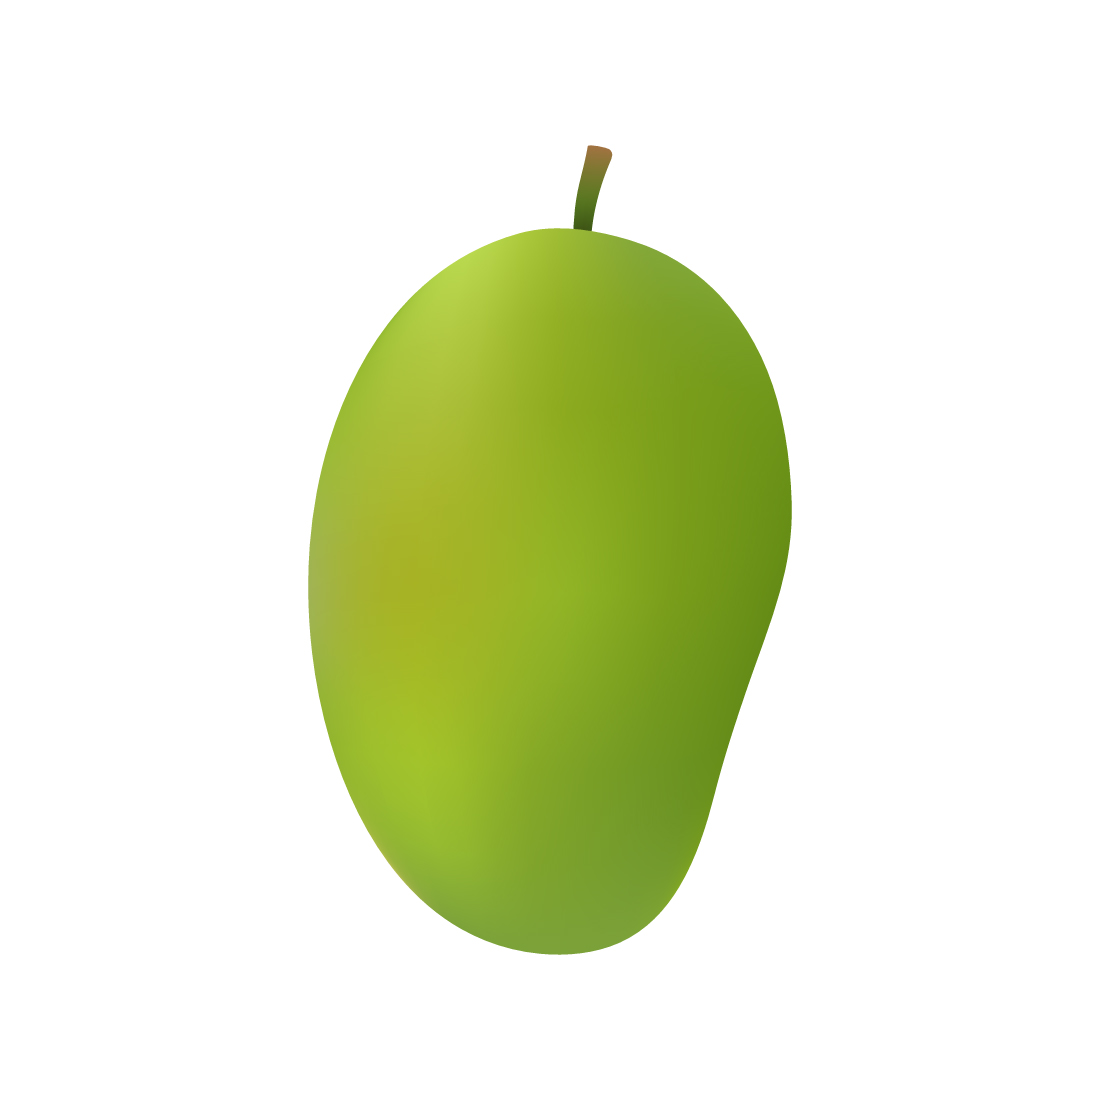 Green Mango Illustration On White Background cover image.